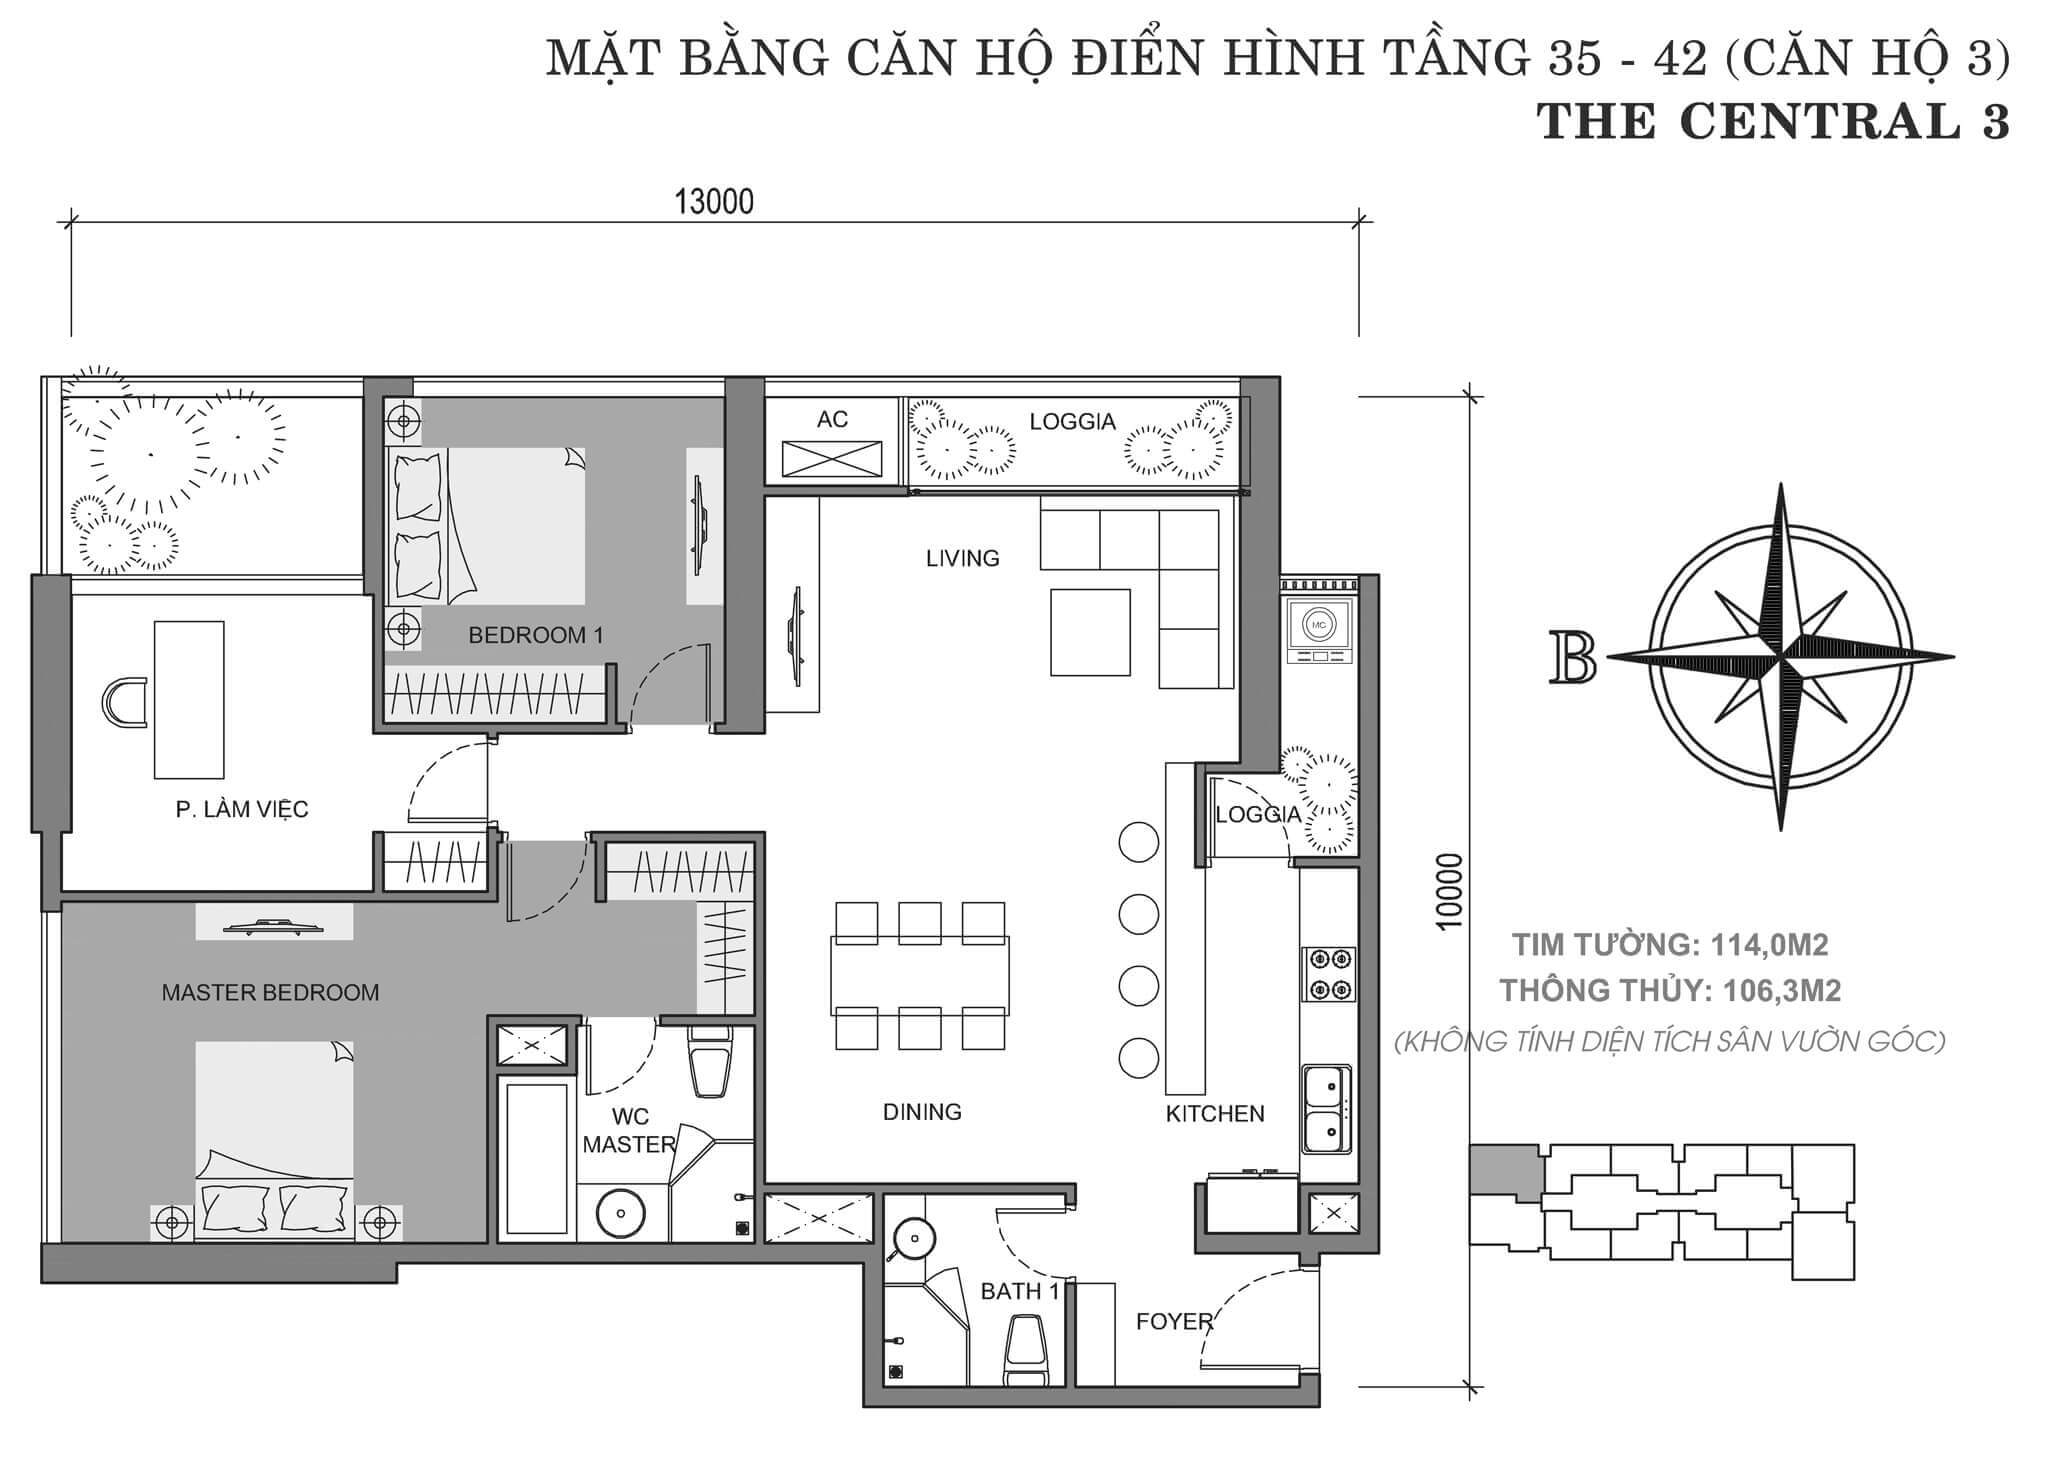 layout căn hộ số 3 tòa Central 3 tầng 35-42